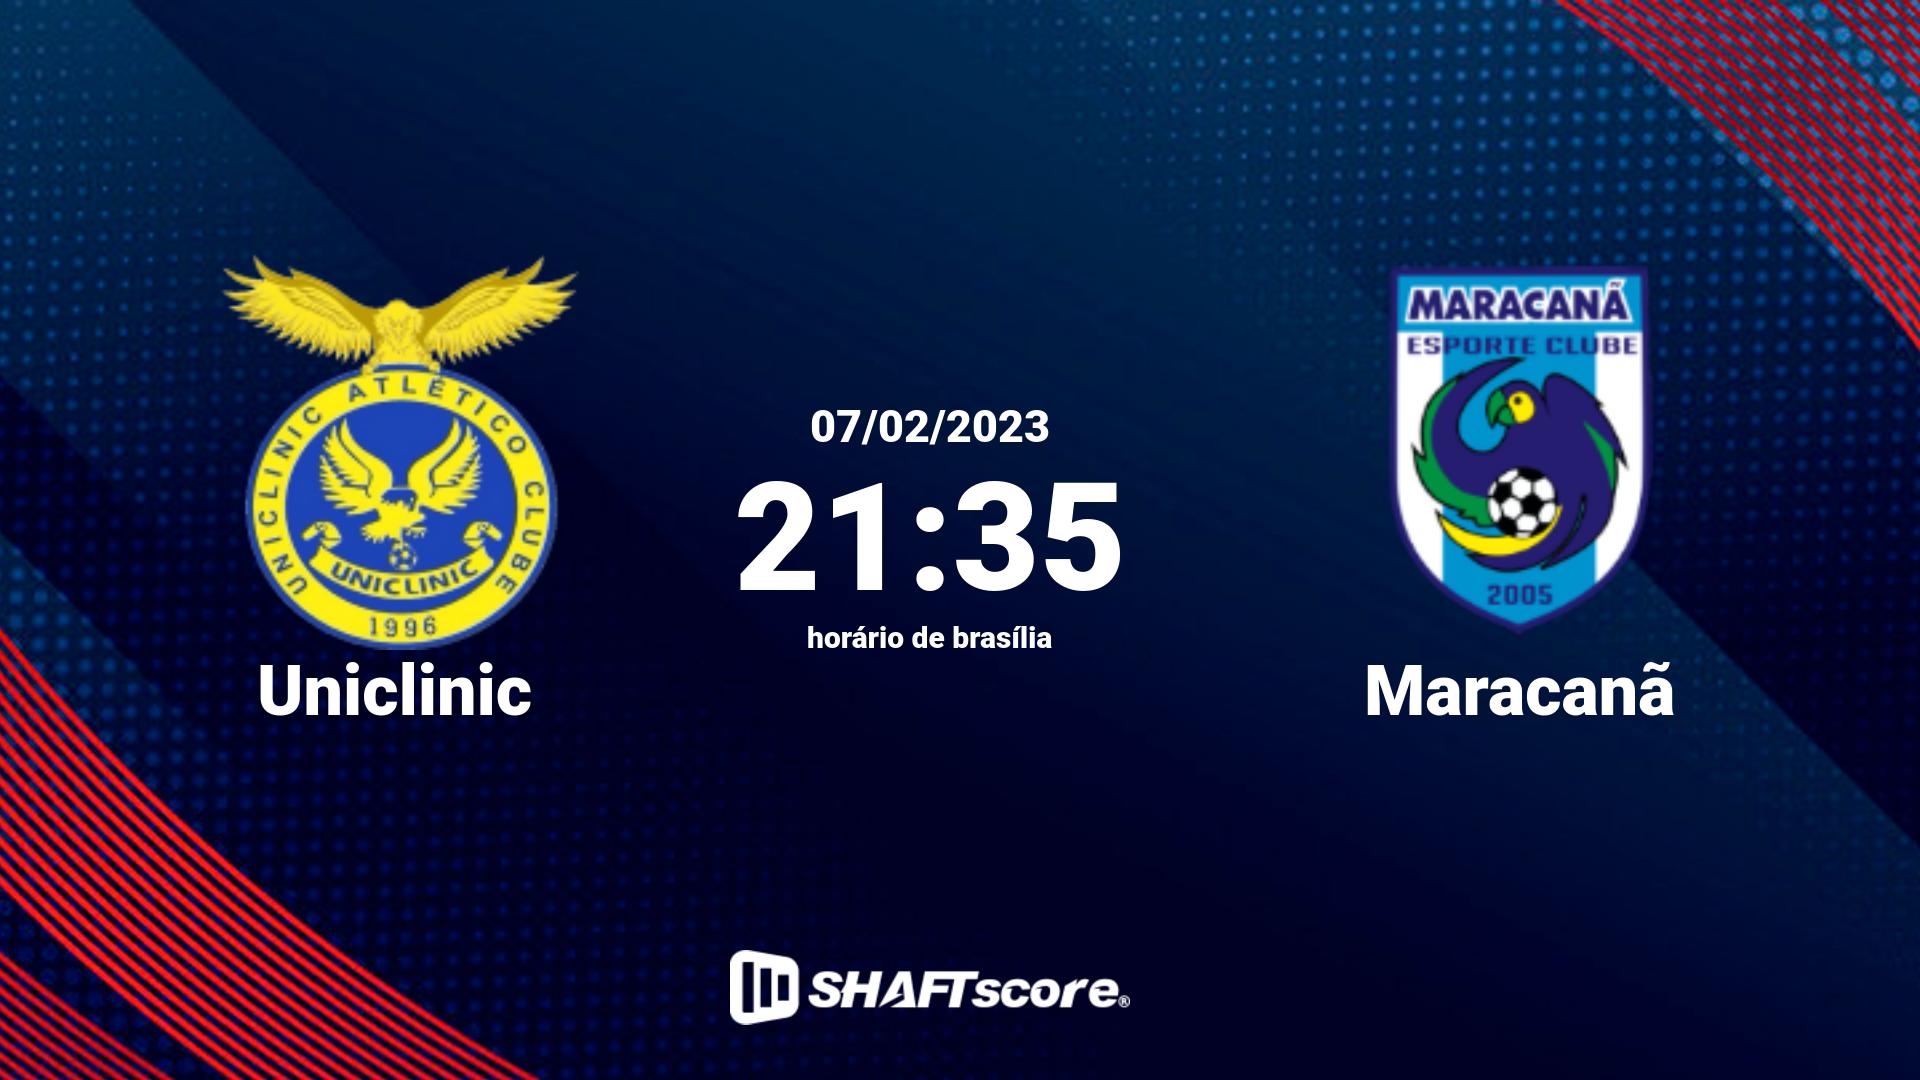 Estatísticas do jogo Uniclinic vs Maracanã 07.02 21:35